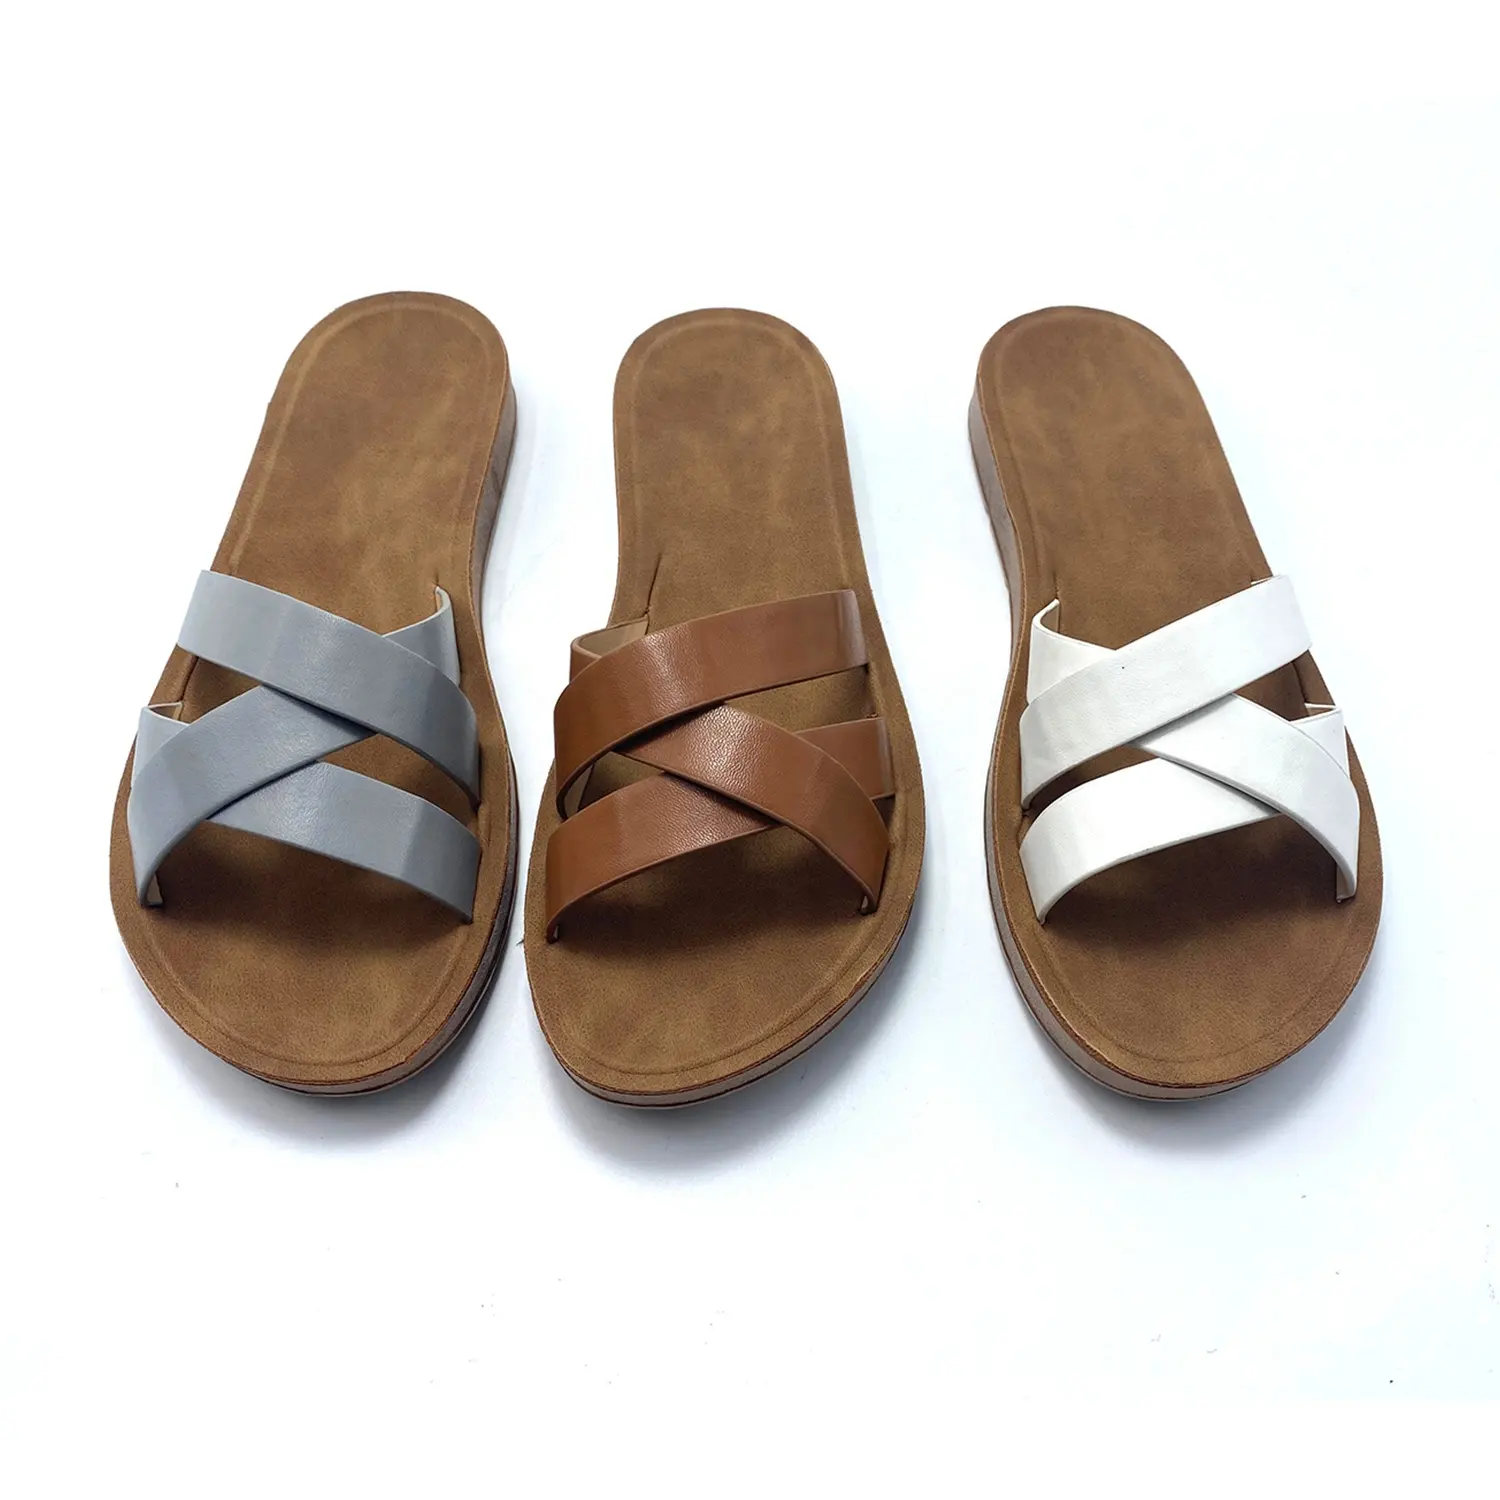 Zapatos de verano Zapatos de las mujeres de cuero de imitación zapatillas último diseño plano tejido Cruz Correa señoras Flip Flops, sandalias